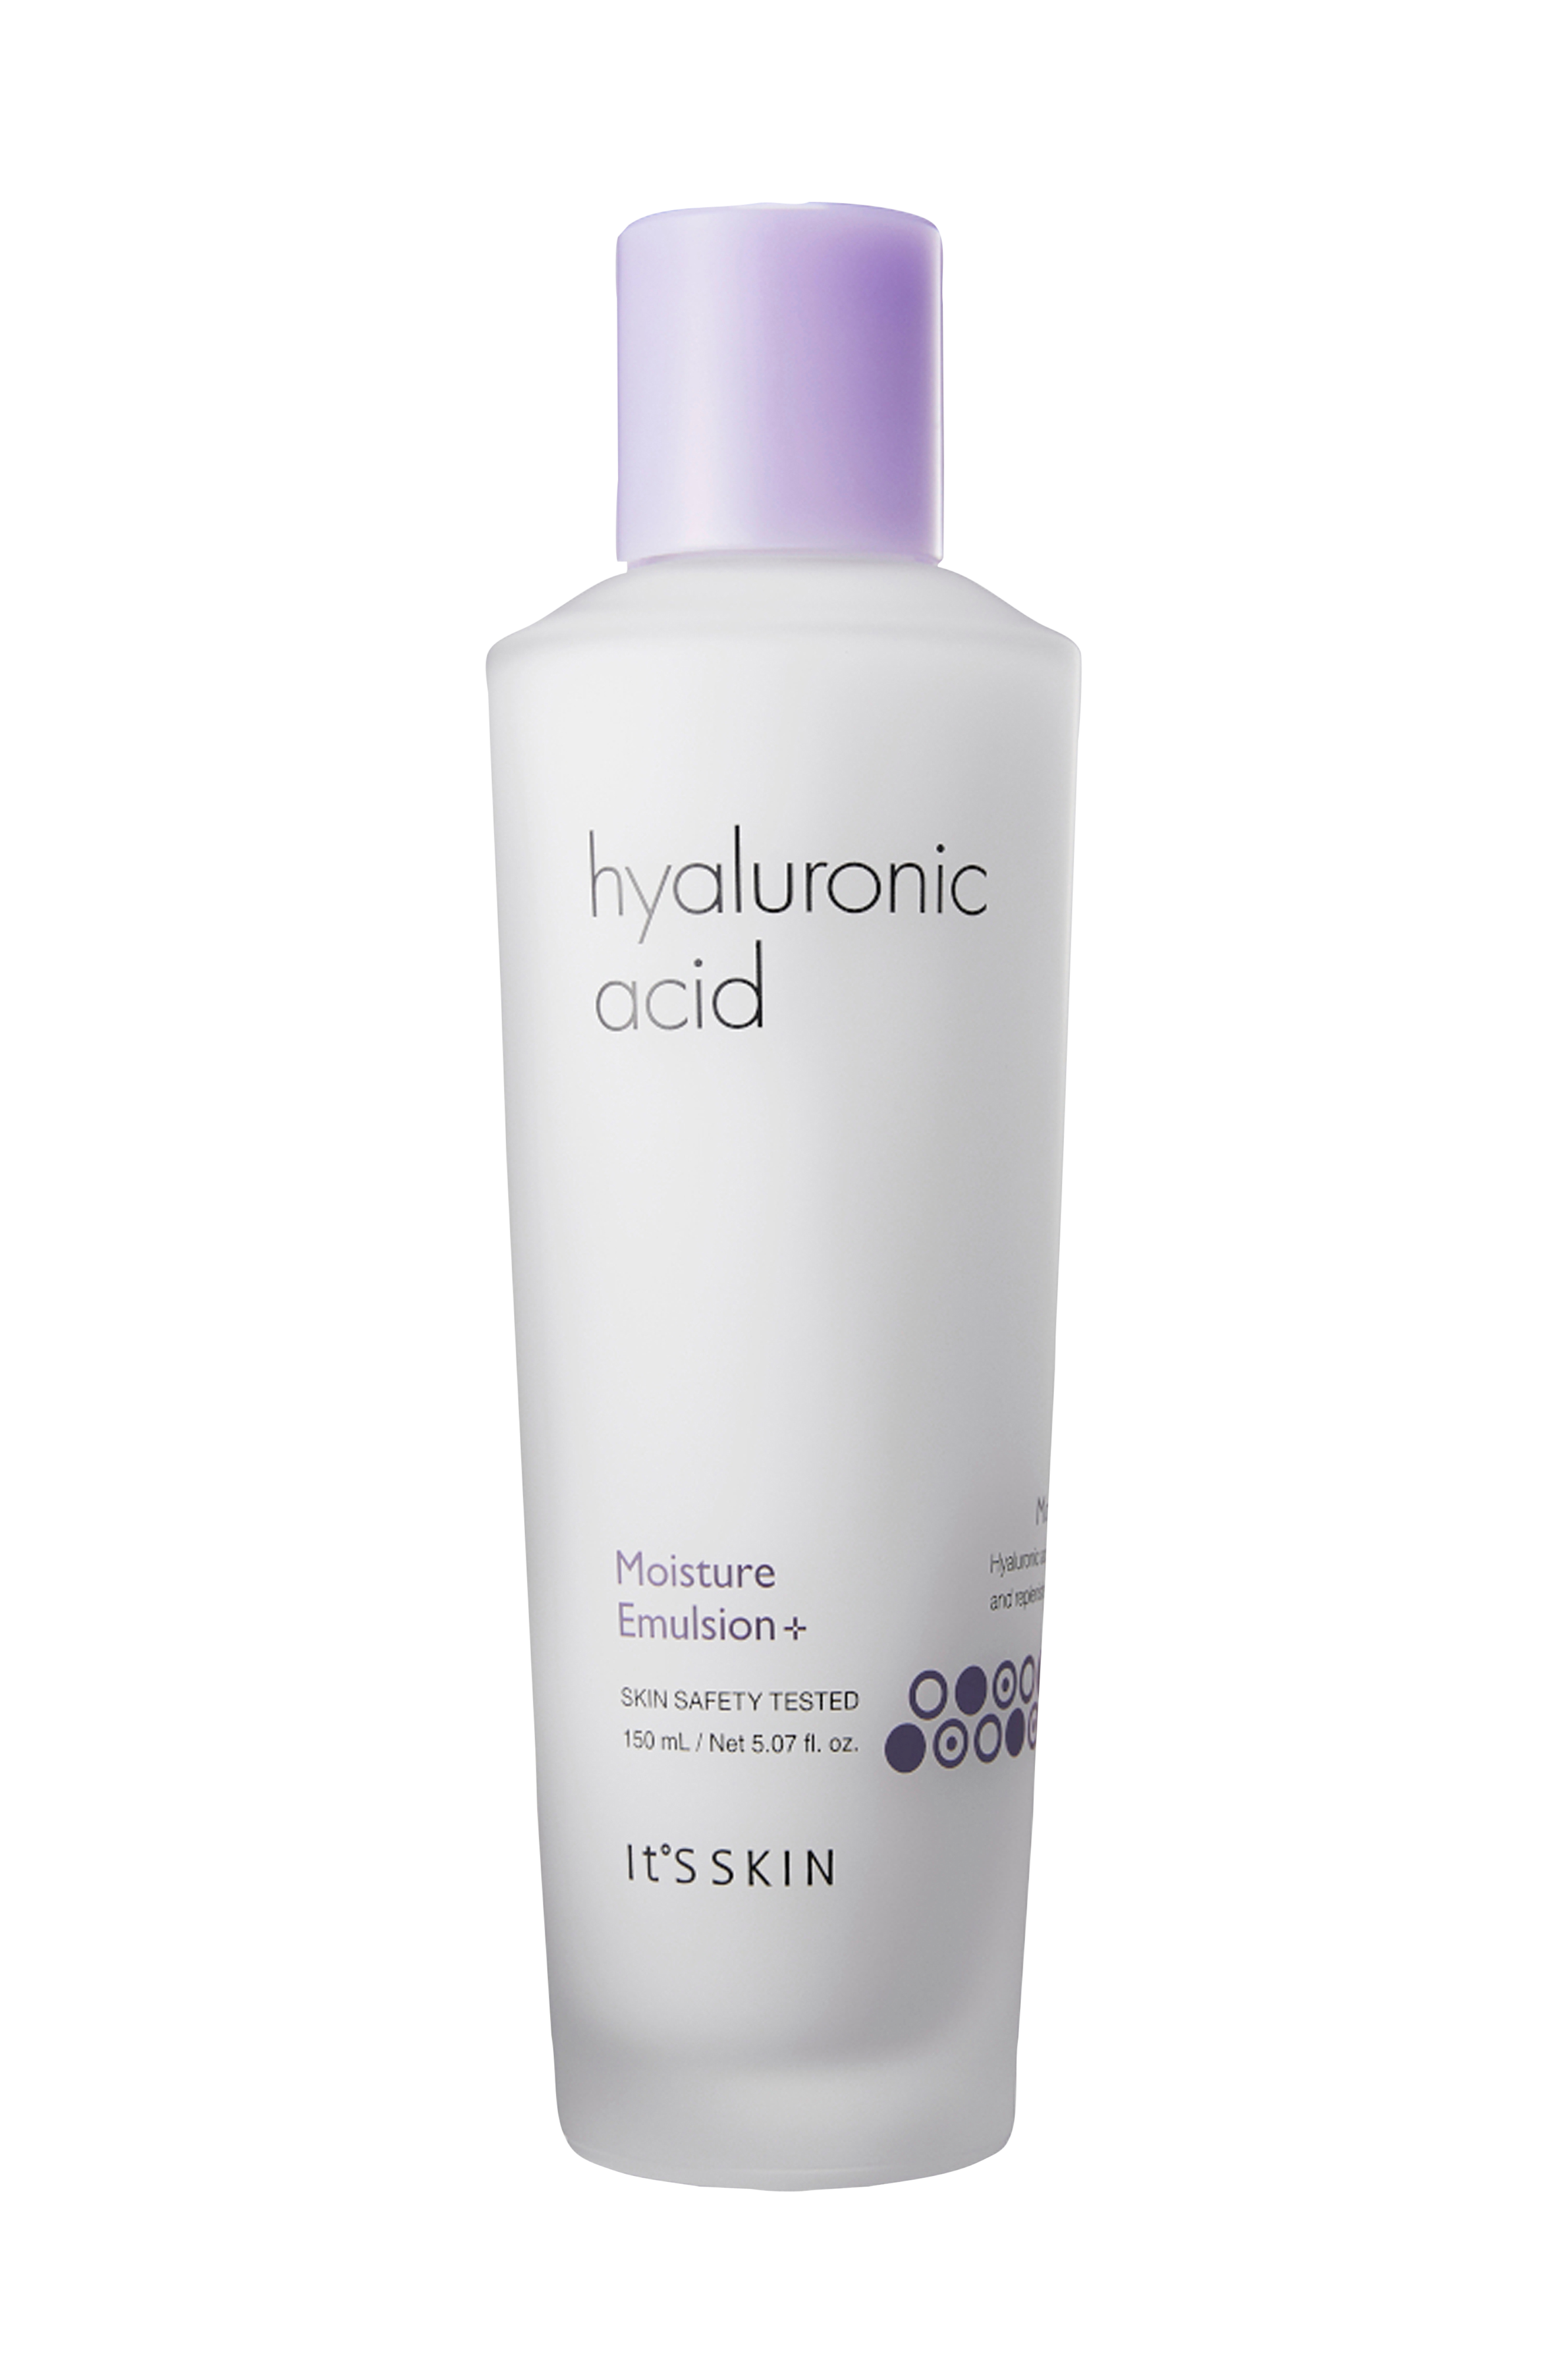 Гиалуроновая эмульсия. Эмульсия it's Skin Hyaluronic. Hyaluronic acid Moisture Emulsion. It's Skin Hyaluronic acid Moisture. It's Skin гиалуроновая эмульсия.